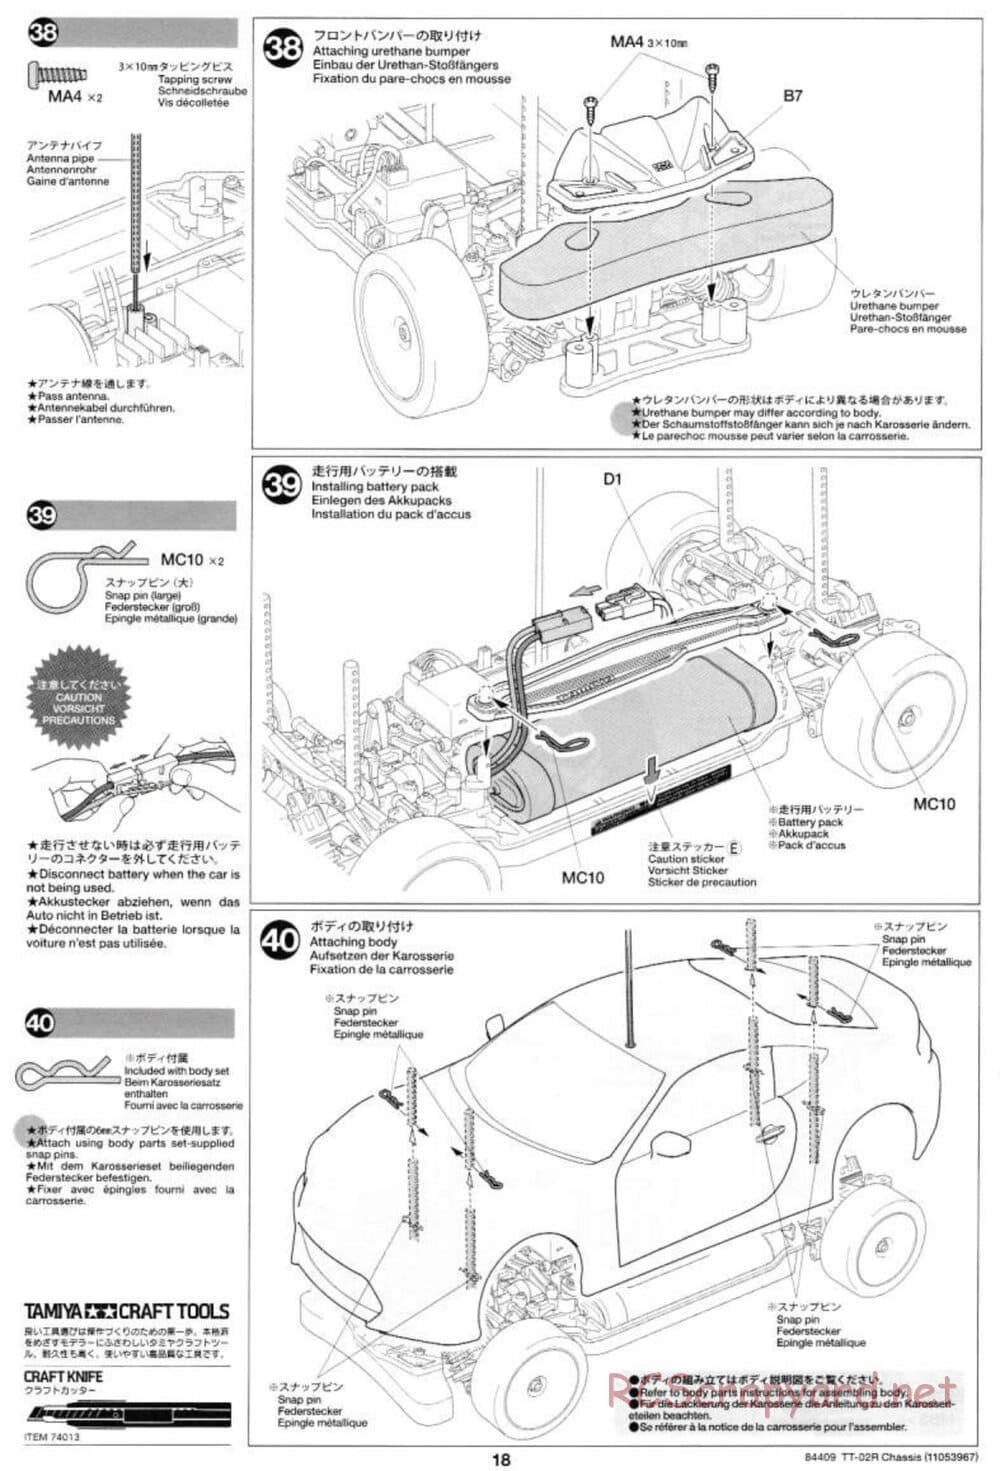 Tamiya - TT-02R Chassis - Manual - Page 18